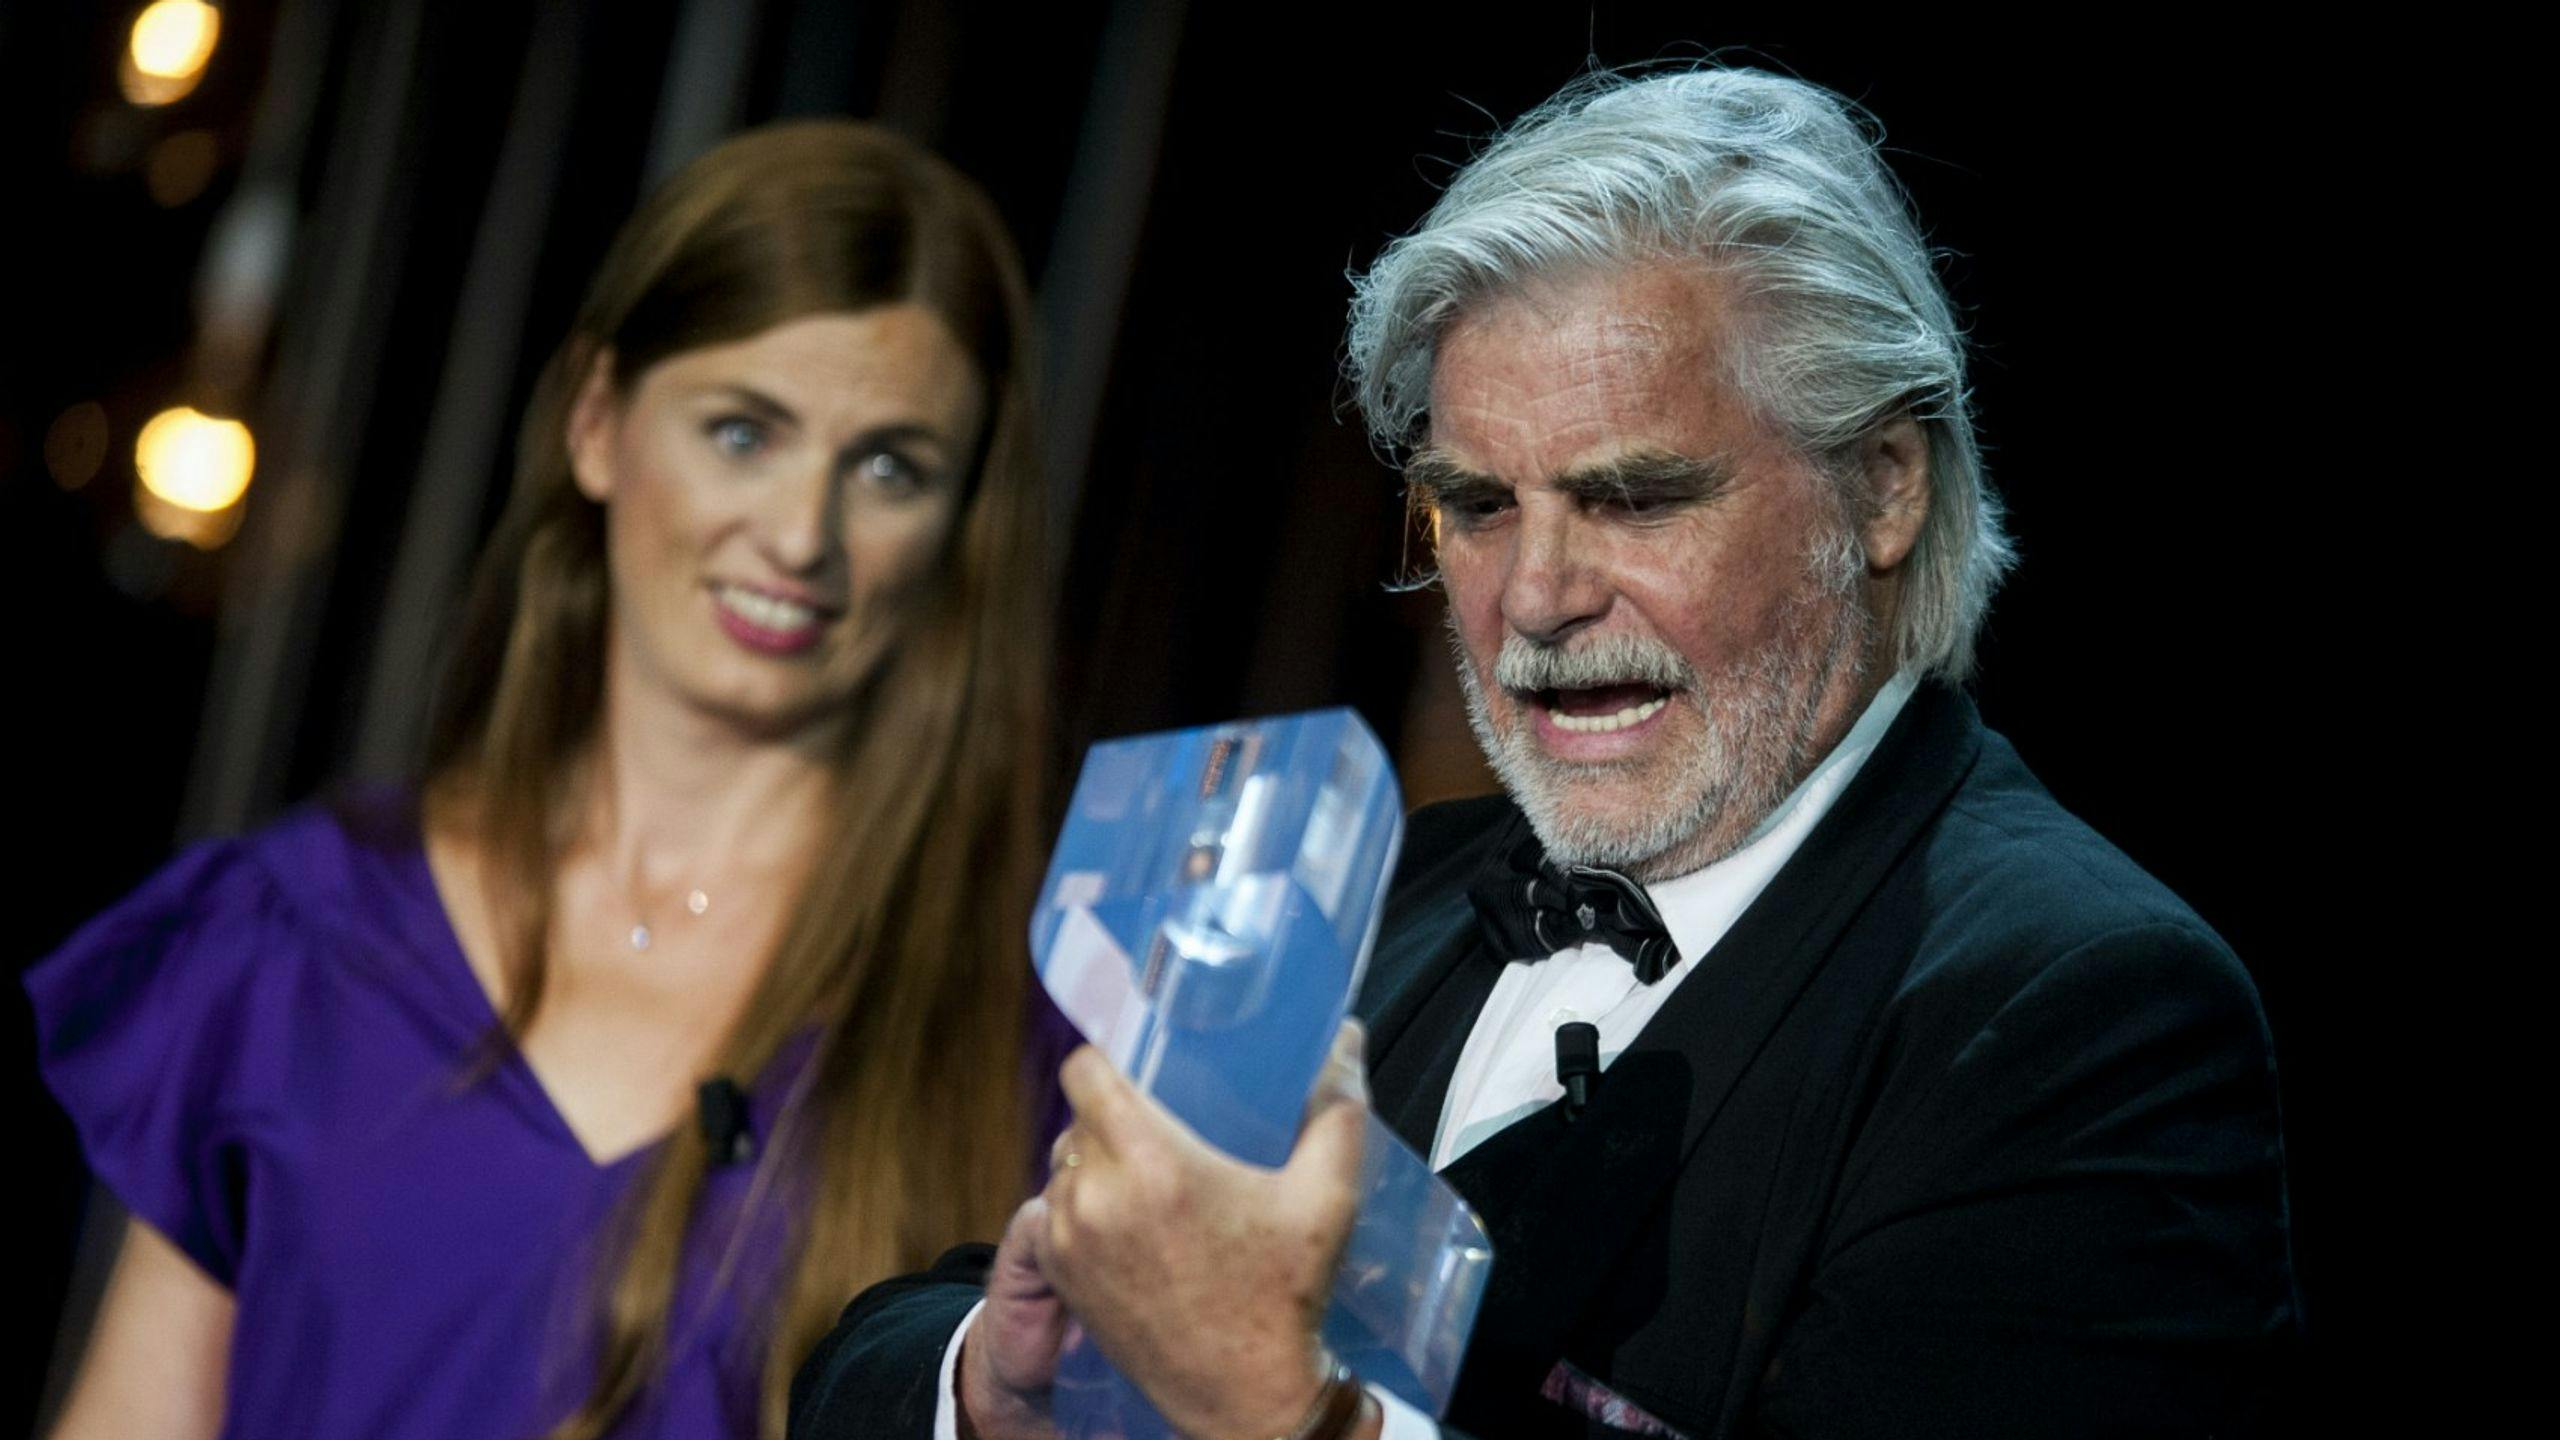 El actor Peter Simonischek recoge su Premio del Cine Europeo al mejor actor por 'Toni Erdmann'.